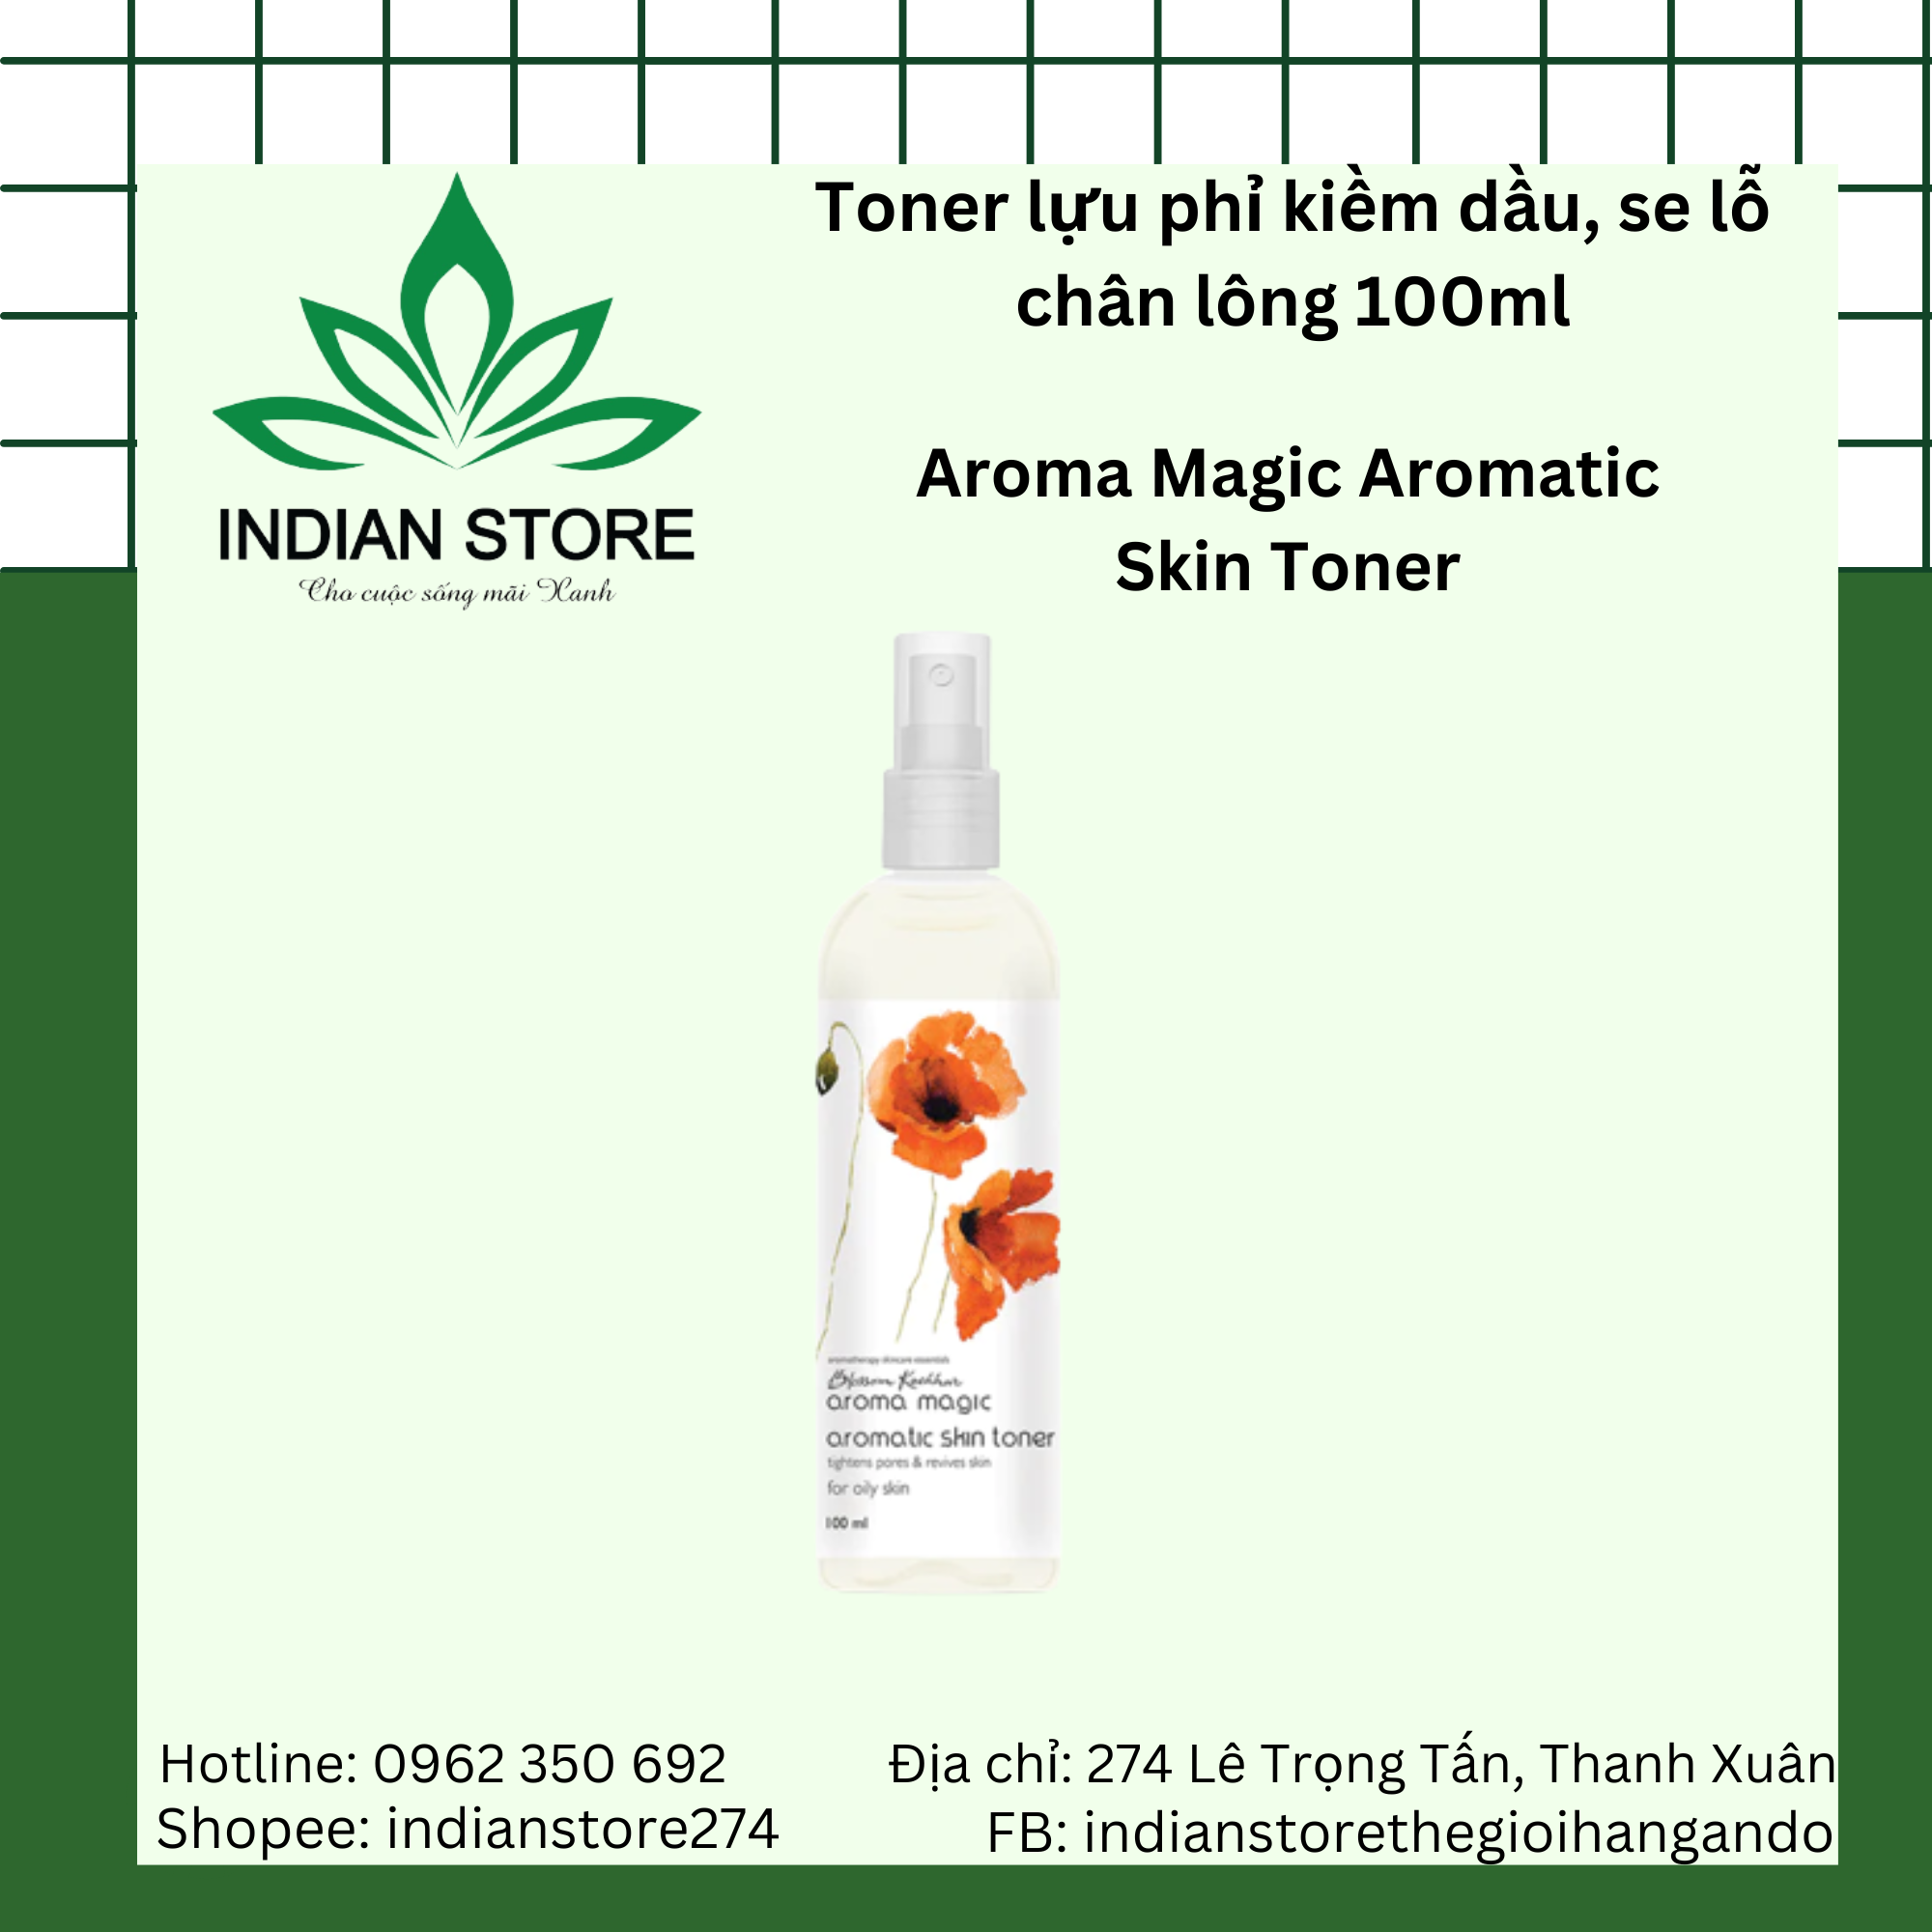 Toner lựu phỉ kiềm dầu- Aroma Magic Aromatic Skin Toner 100ml